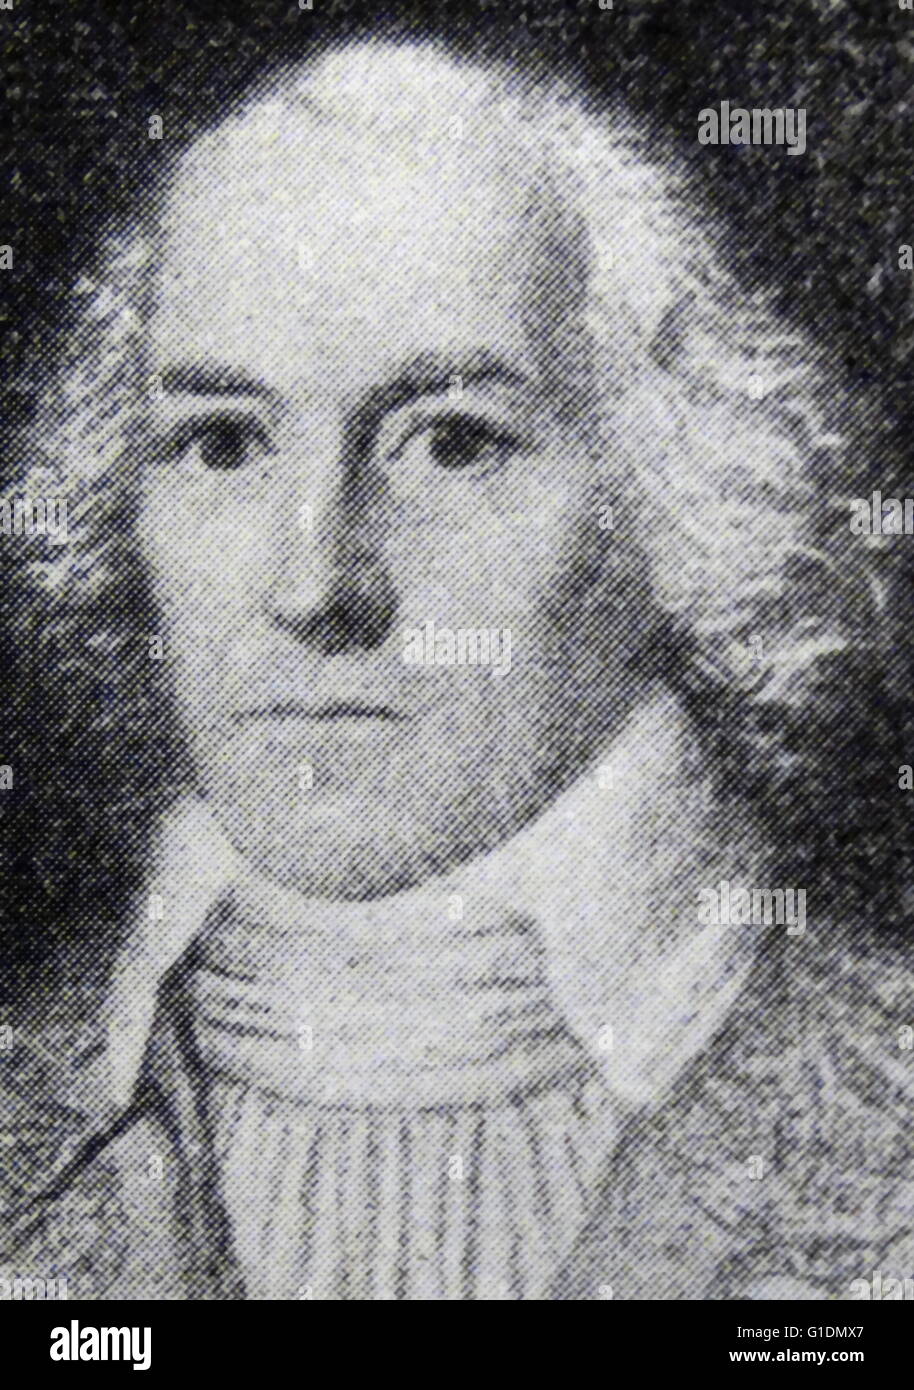 Portrait de Paul Barras (1755-1829) un homme politique français de la Révolution française et chef de l'Annuaire du régime. En date du 19e siècle Banque D'Images